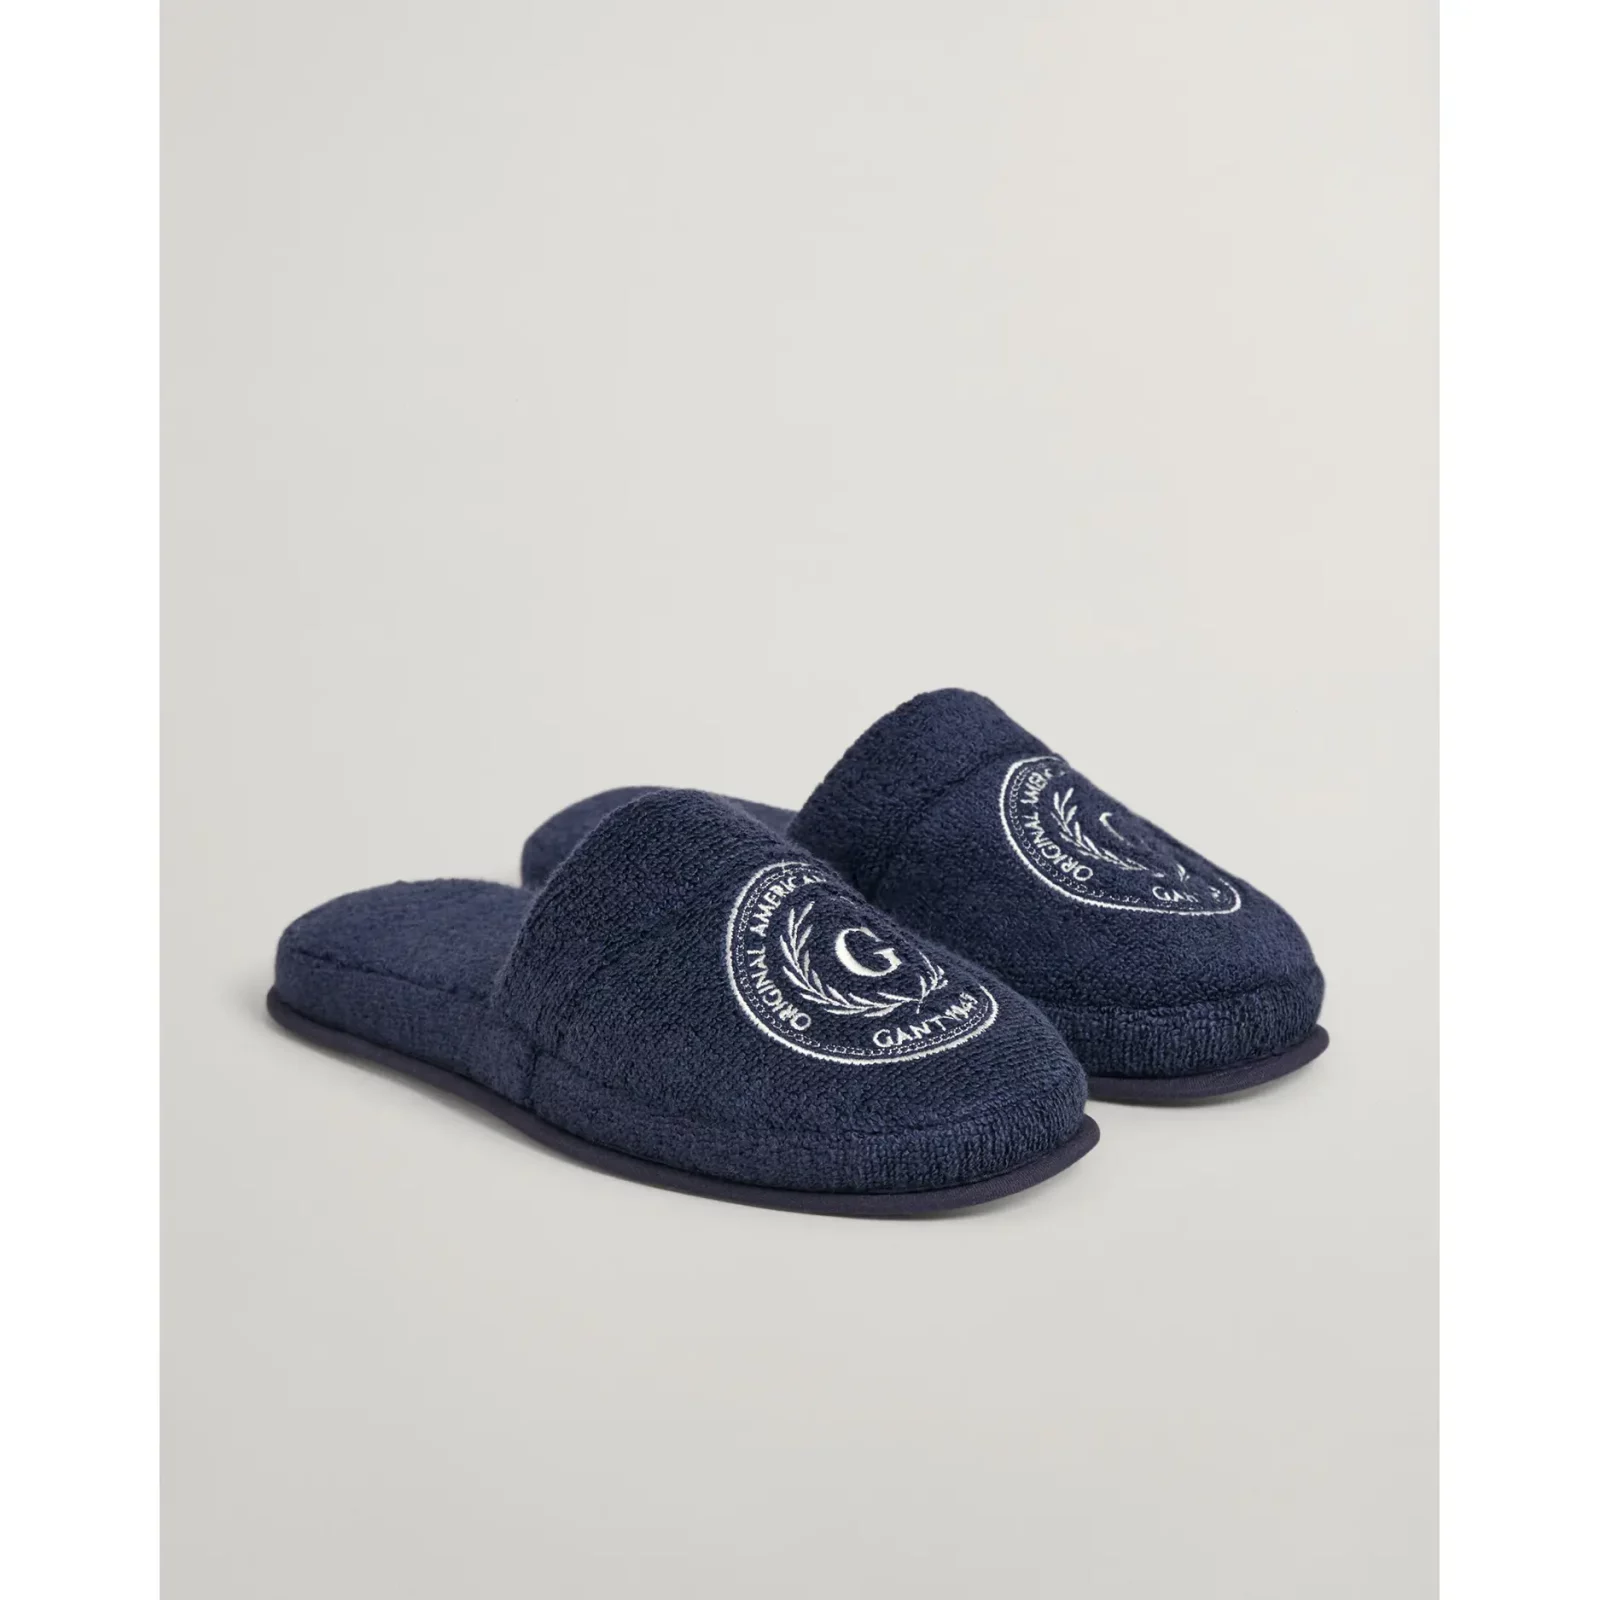 Gant_crest-slippers_navy_202303-856006513-410_